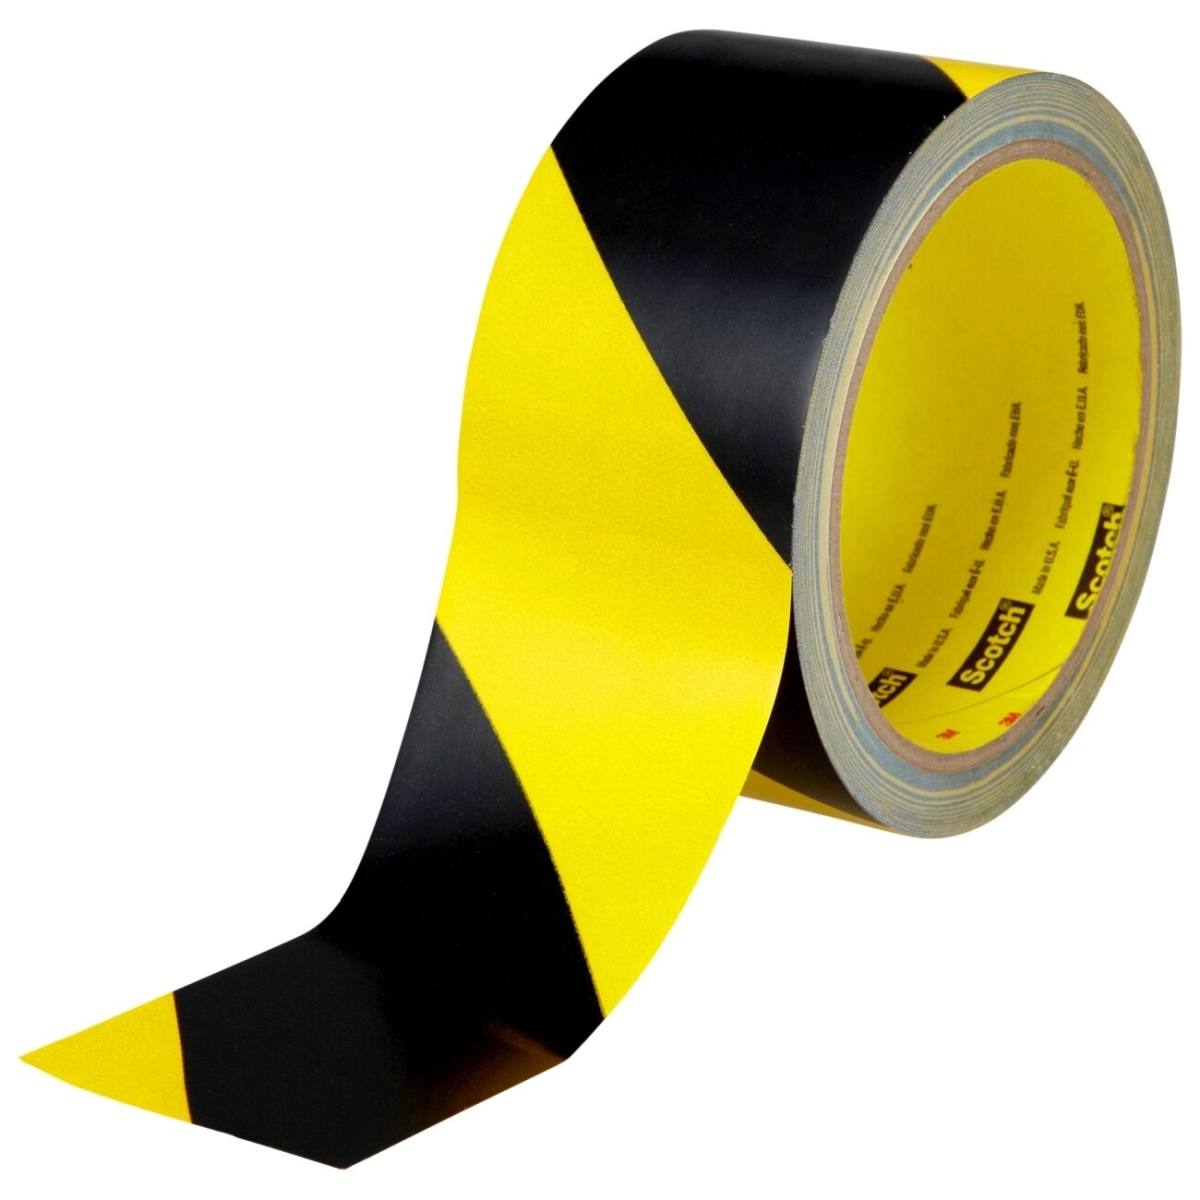 3M ruban de marquage de danger 5702, jaune/noir, 50 mm x 33 m, emballage individuel pratique